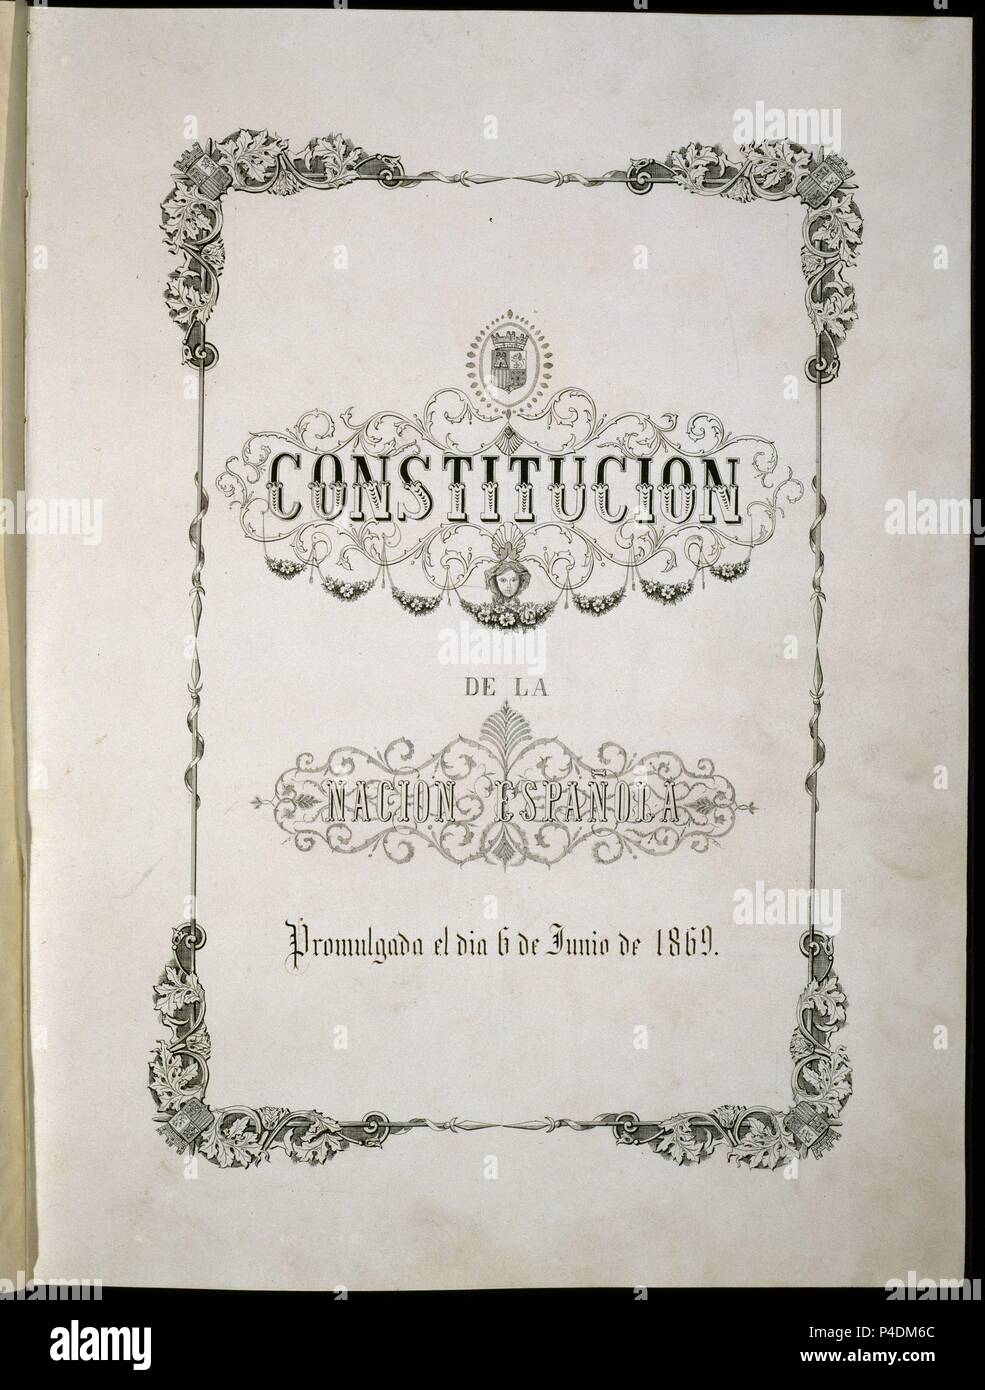 CONSTITUCION DE LA NACION ESPAÑOLA PROMULGADA EL 6/6/1869-PORTADA. Location: CONGRESO DE LOS DIPUTADOS-BIBLIOTECA, MADRID, SPAIN. Stock Photo